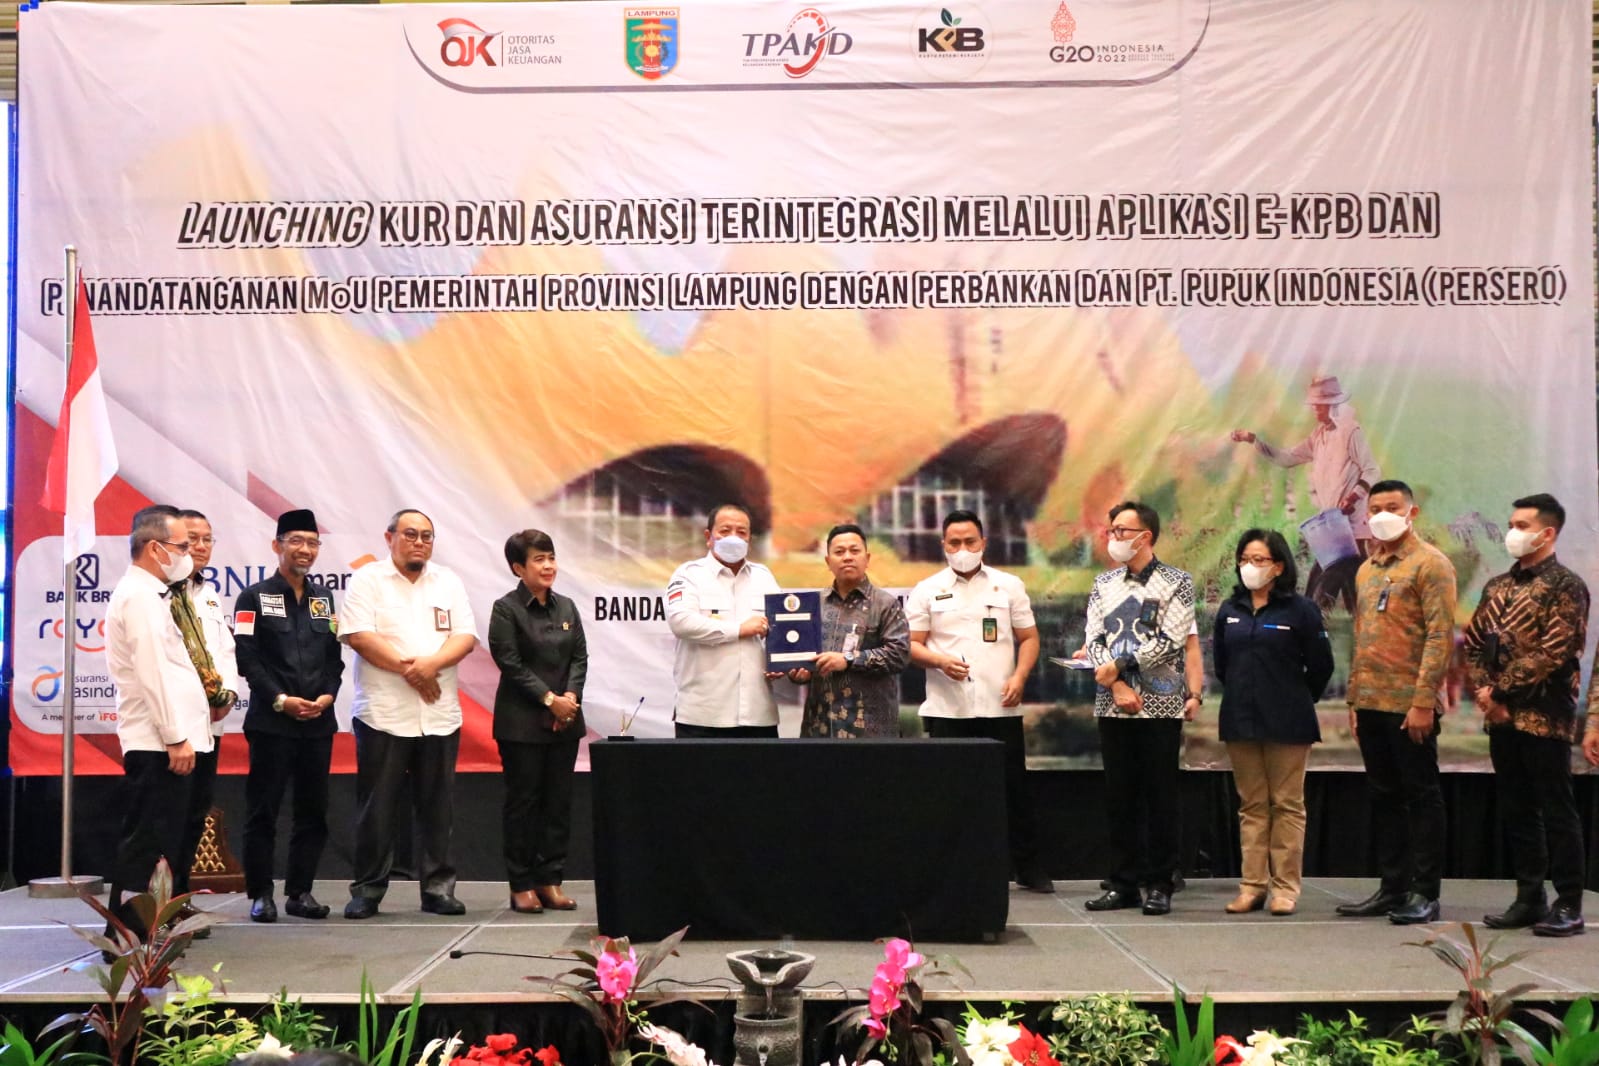 Pemerintah Provinsi Lampung melaksanakan Penyuluhan Hukum Terpadu di Kabupaten Pringsewu